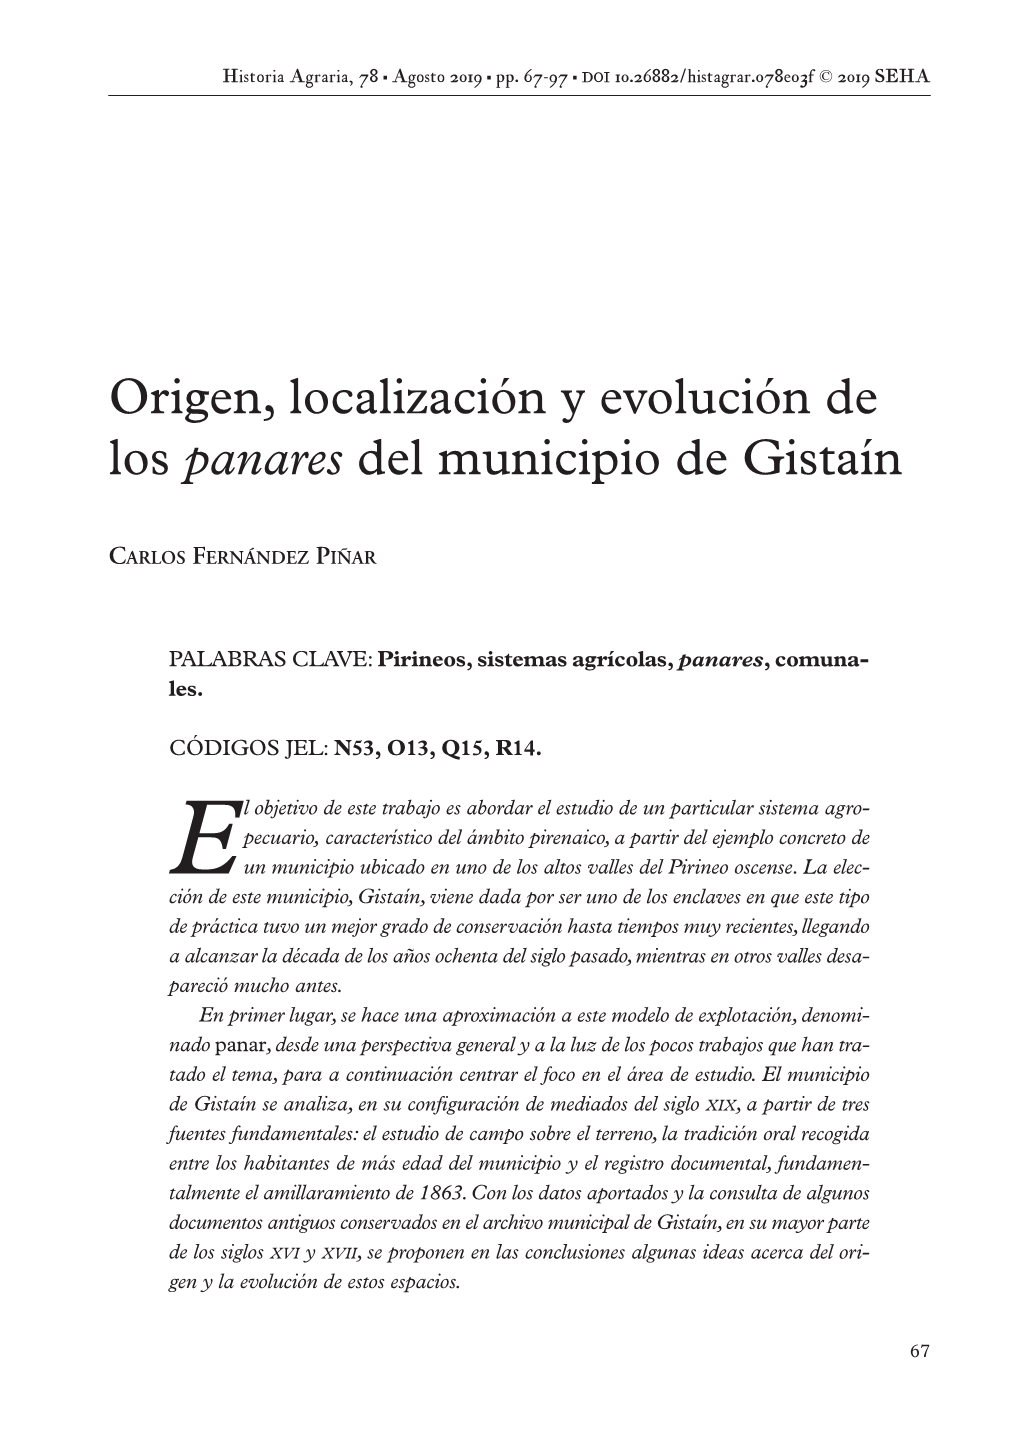 Origen, Localización Y Evolución De Los Panares Del Municipio De Gistaín